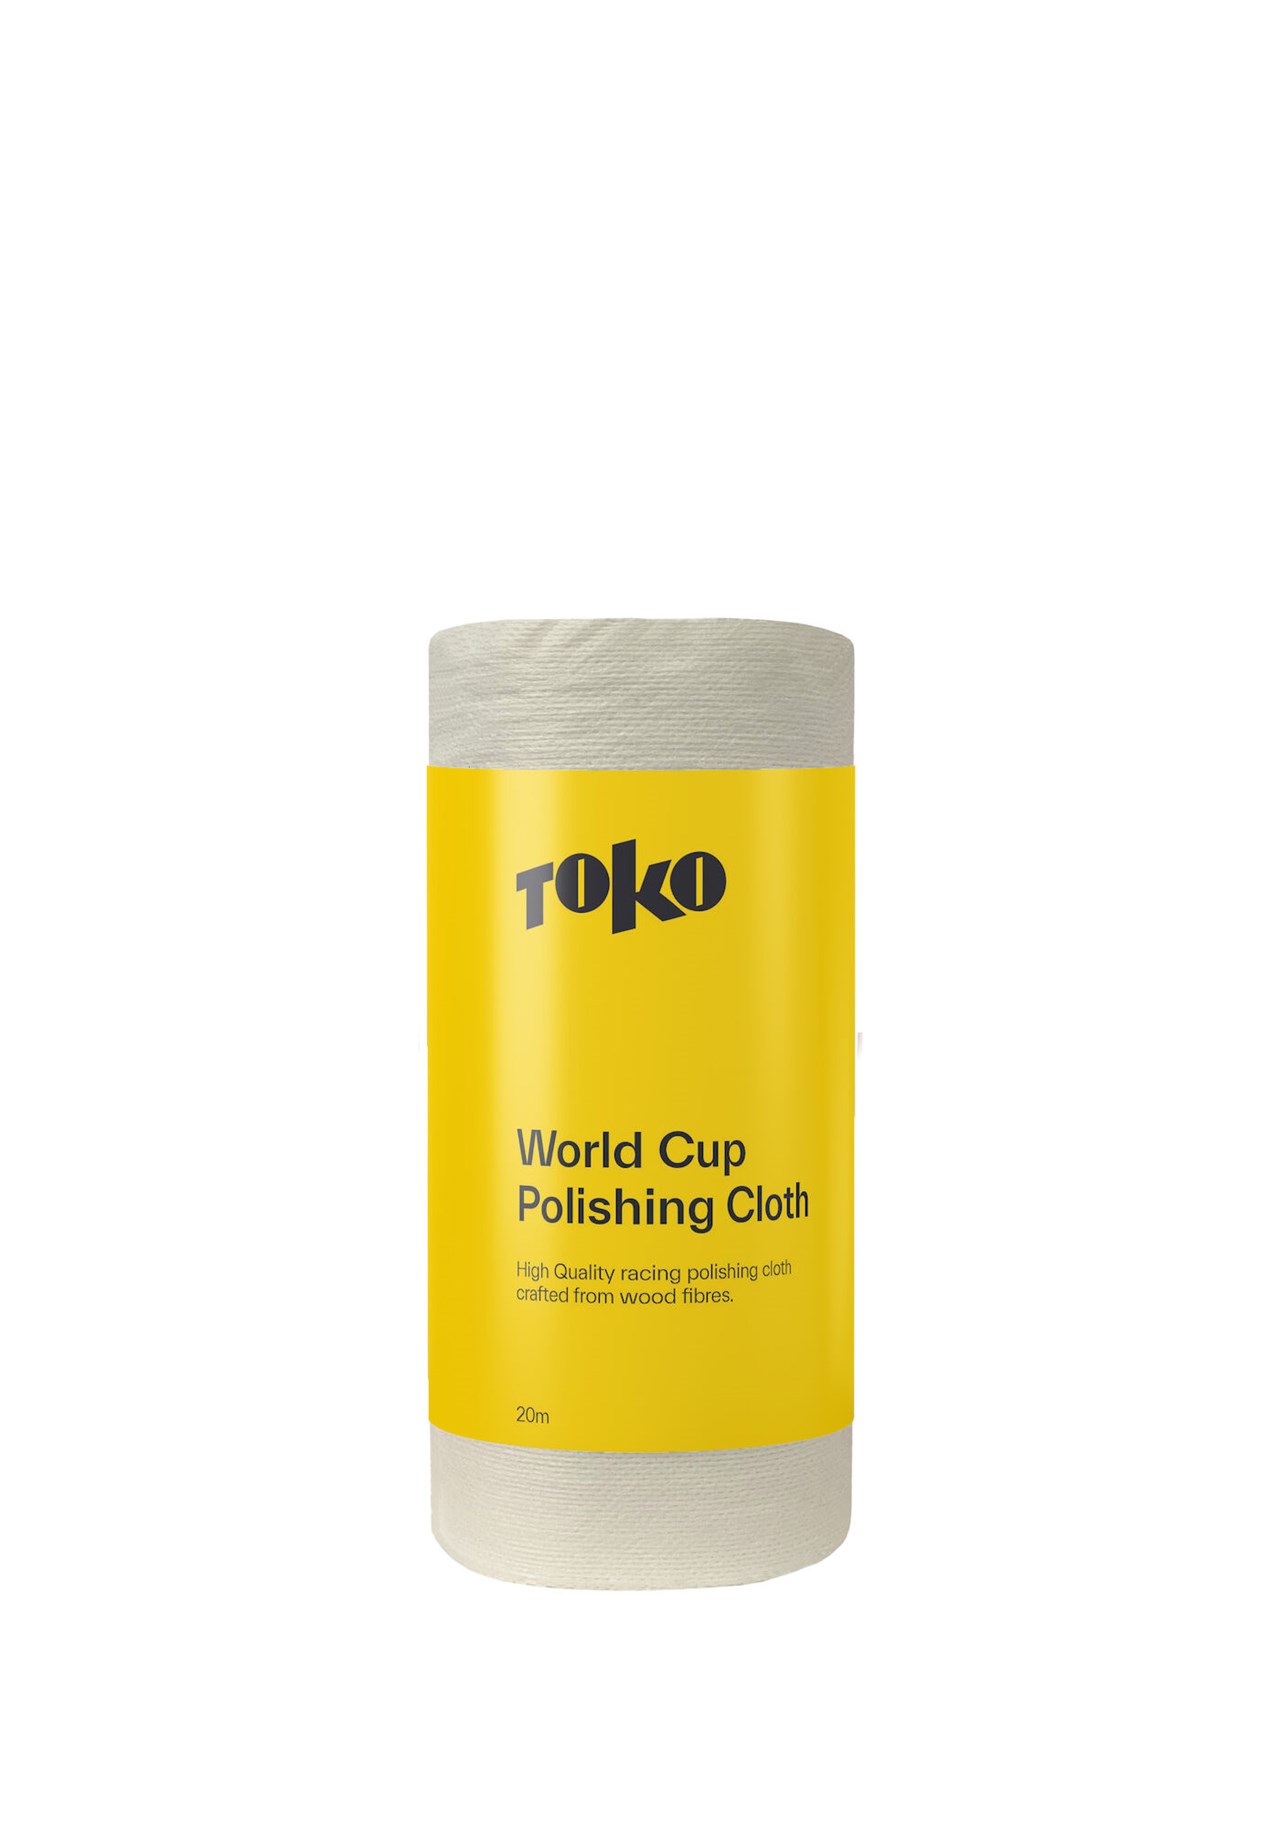 TOKO World Cup Polishing Cloth